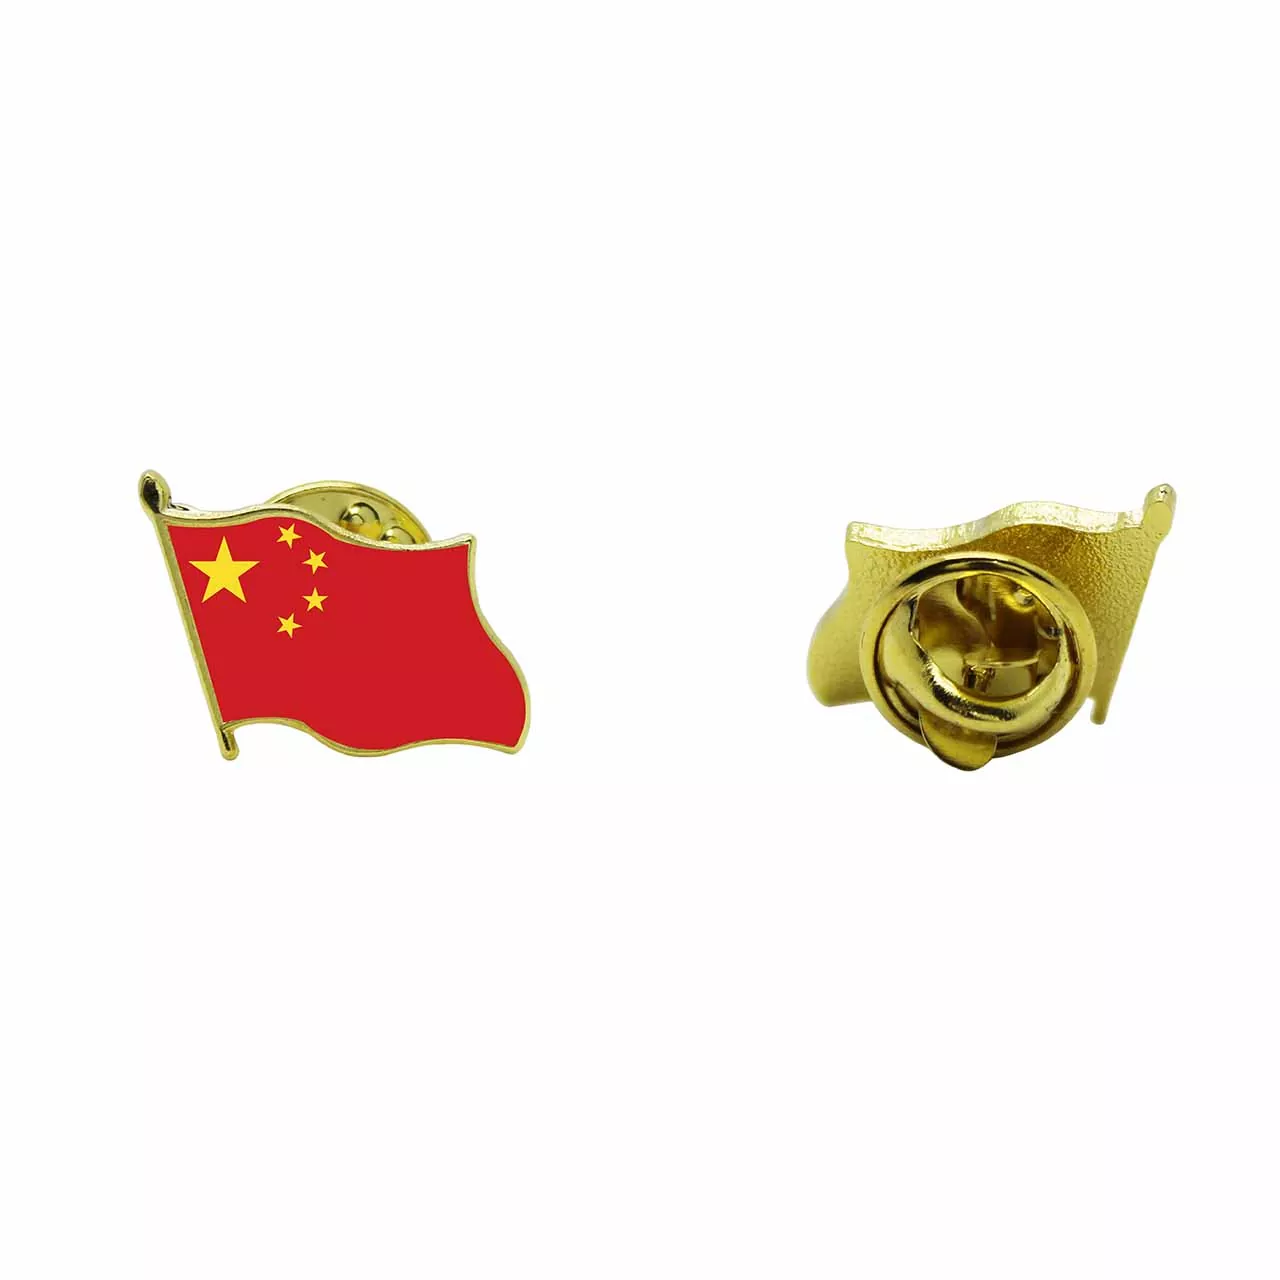 China National Flag Lapel Pins